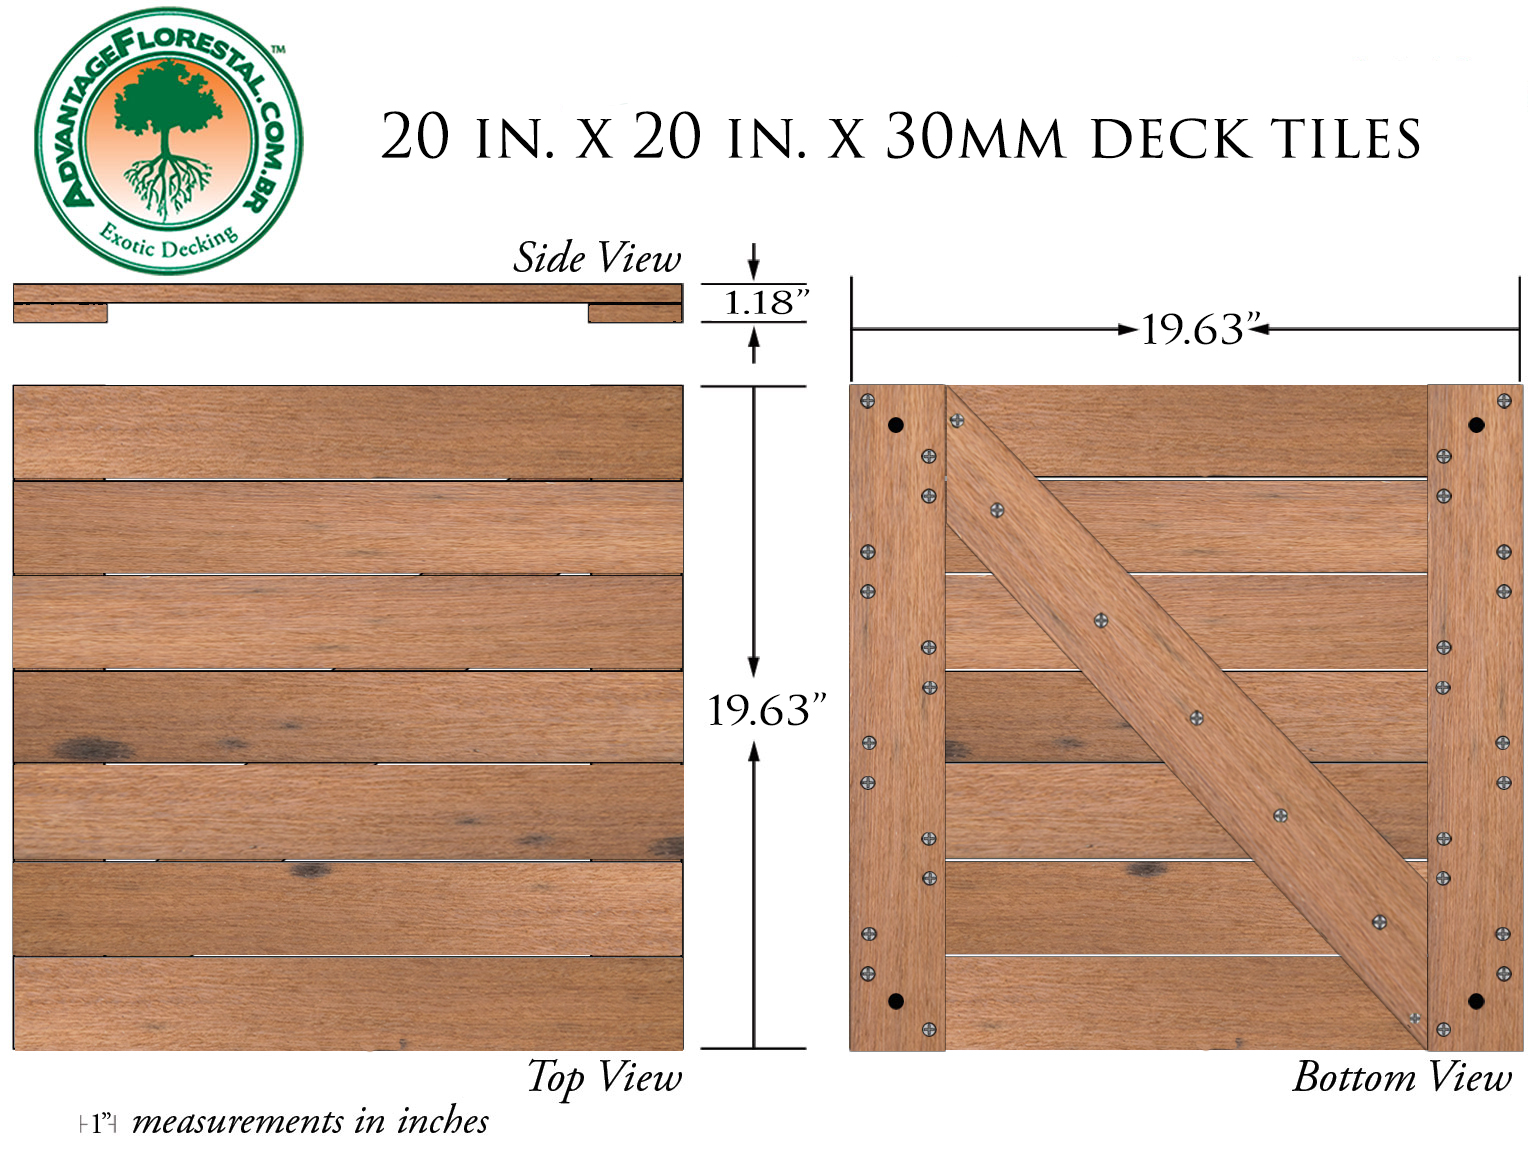 Itauba Deck Tile 20 in. x 20 in. x 30mm